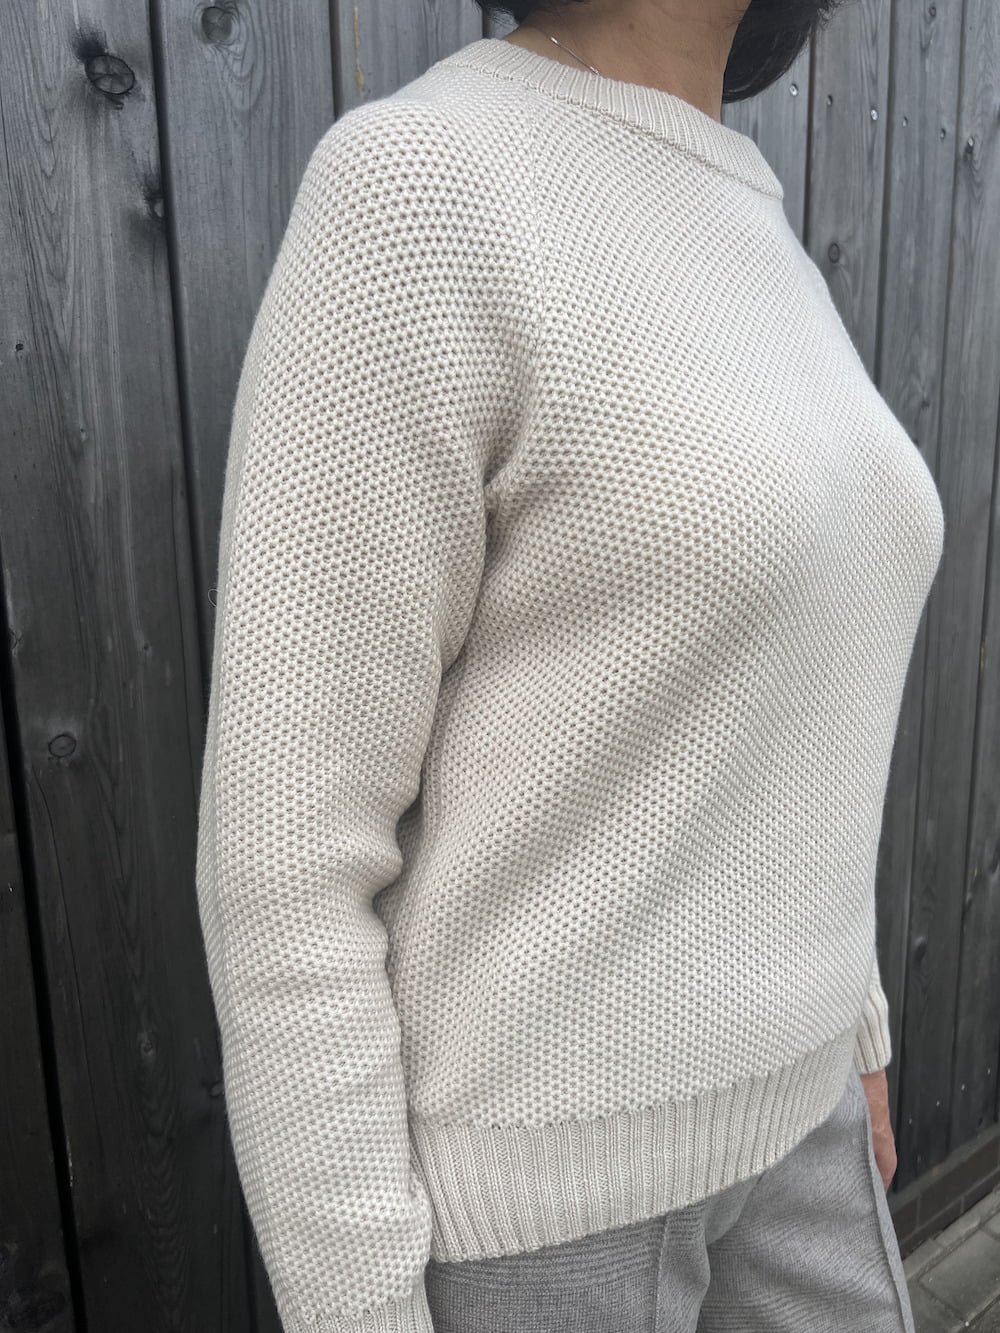 jaukus ir minkštas merino vilnos megztinis koriuko raštu